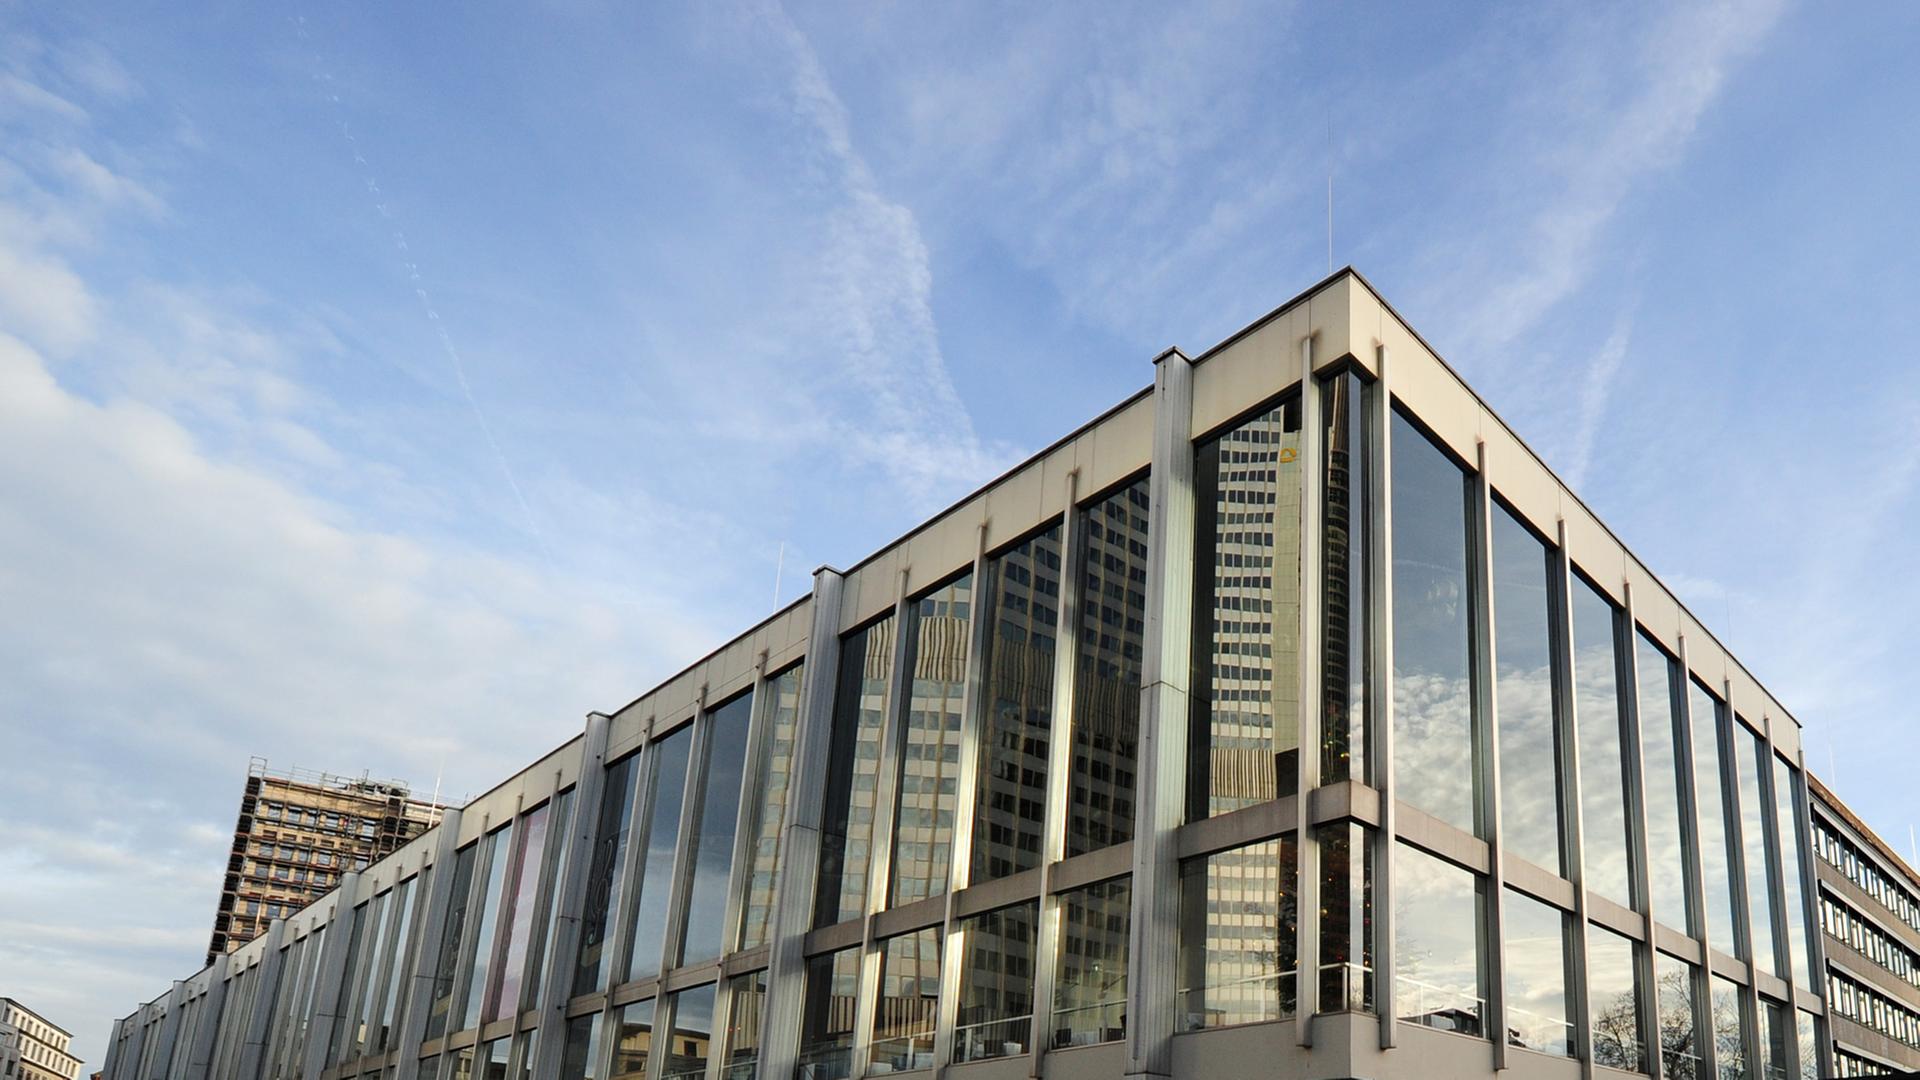 Oper und Schauspiel in Frankfurt am Main: Die beiden Häuser teilen sich ein Gebäude, das an Schlichtheit nicht zu überbieten ist.